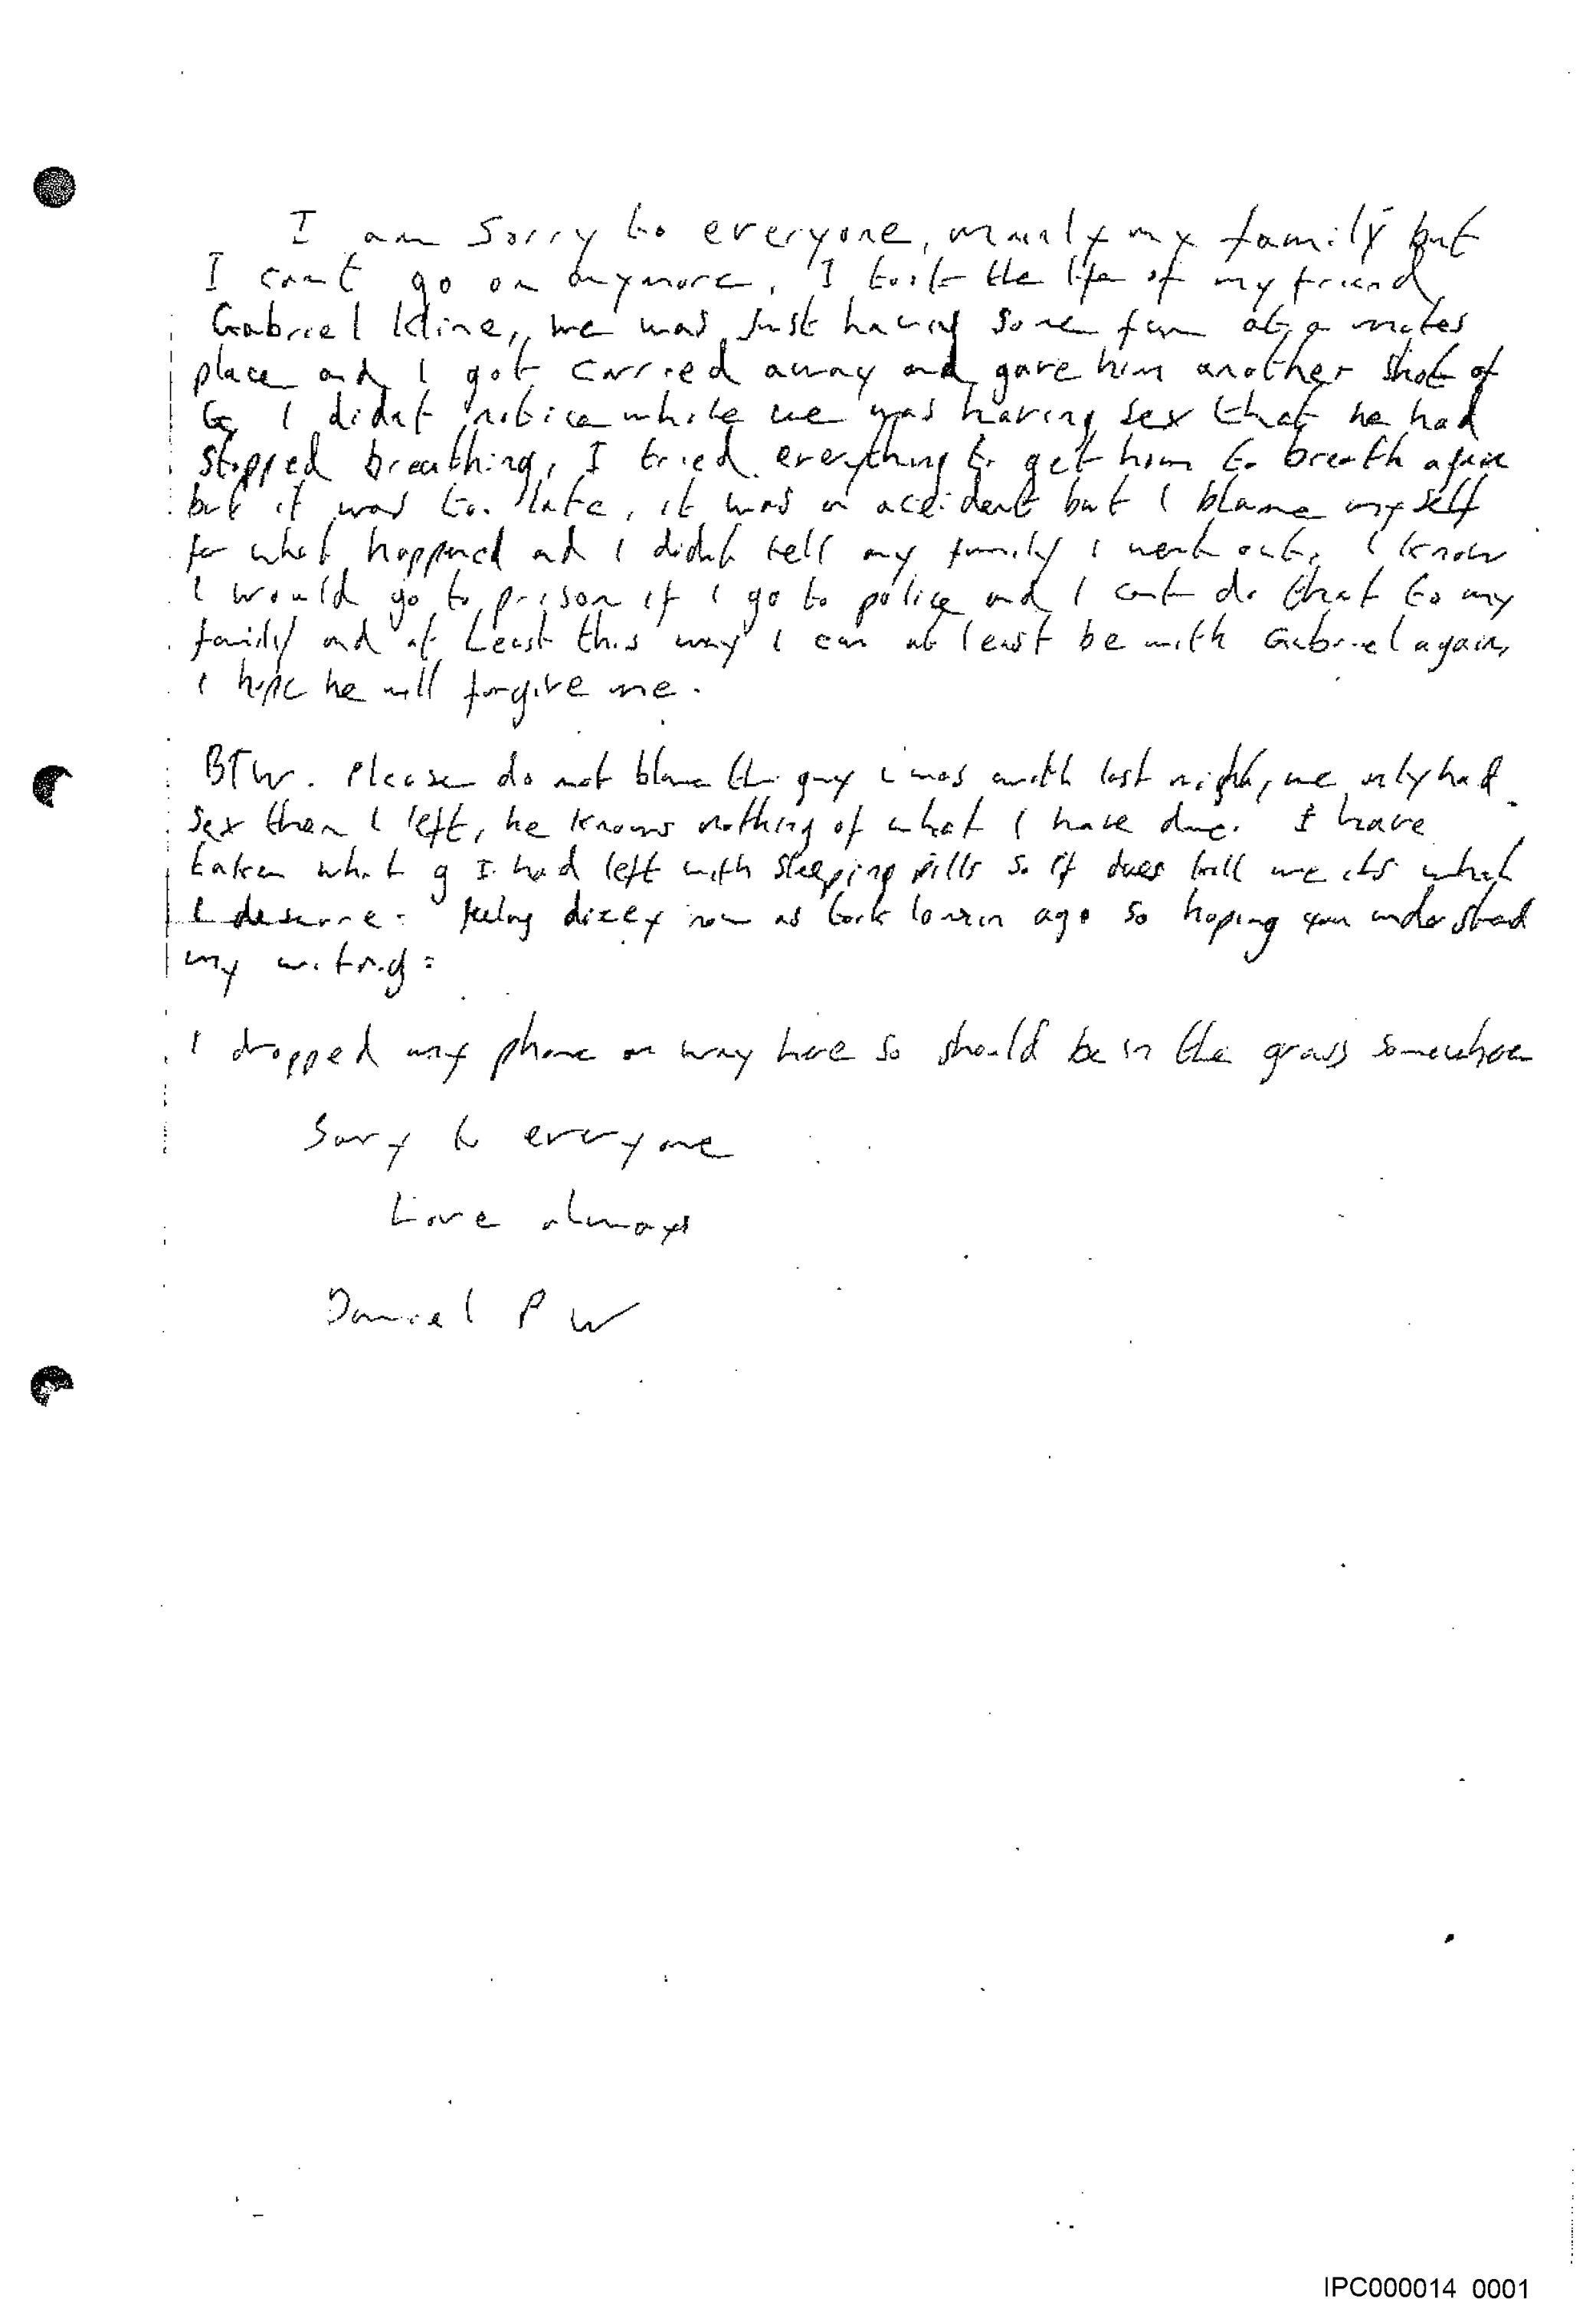 La nota de suicidio falsa, escrita por Port y que fue encontrada con el cadaver de Whitworth